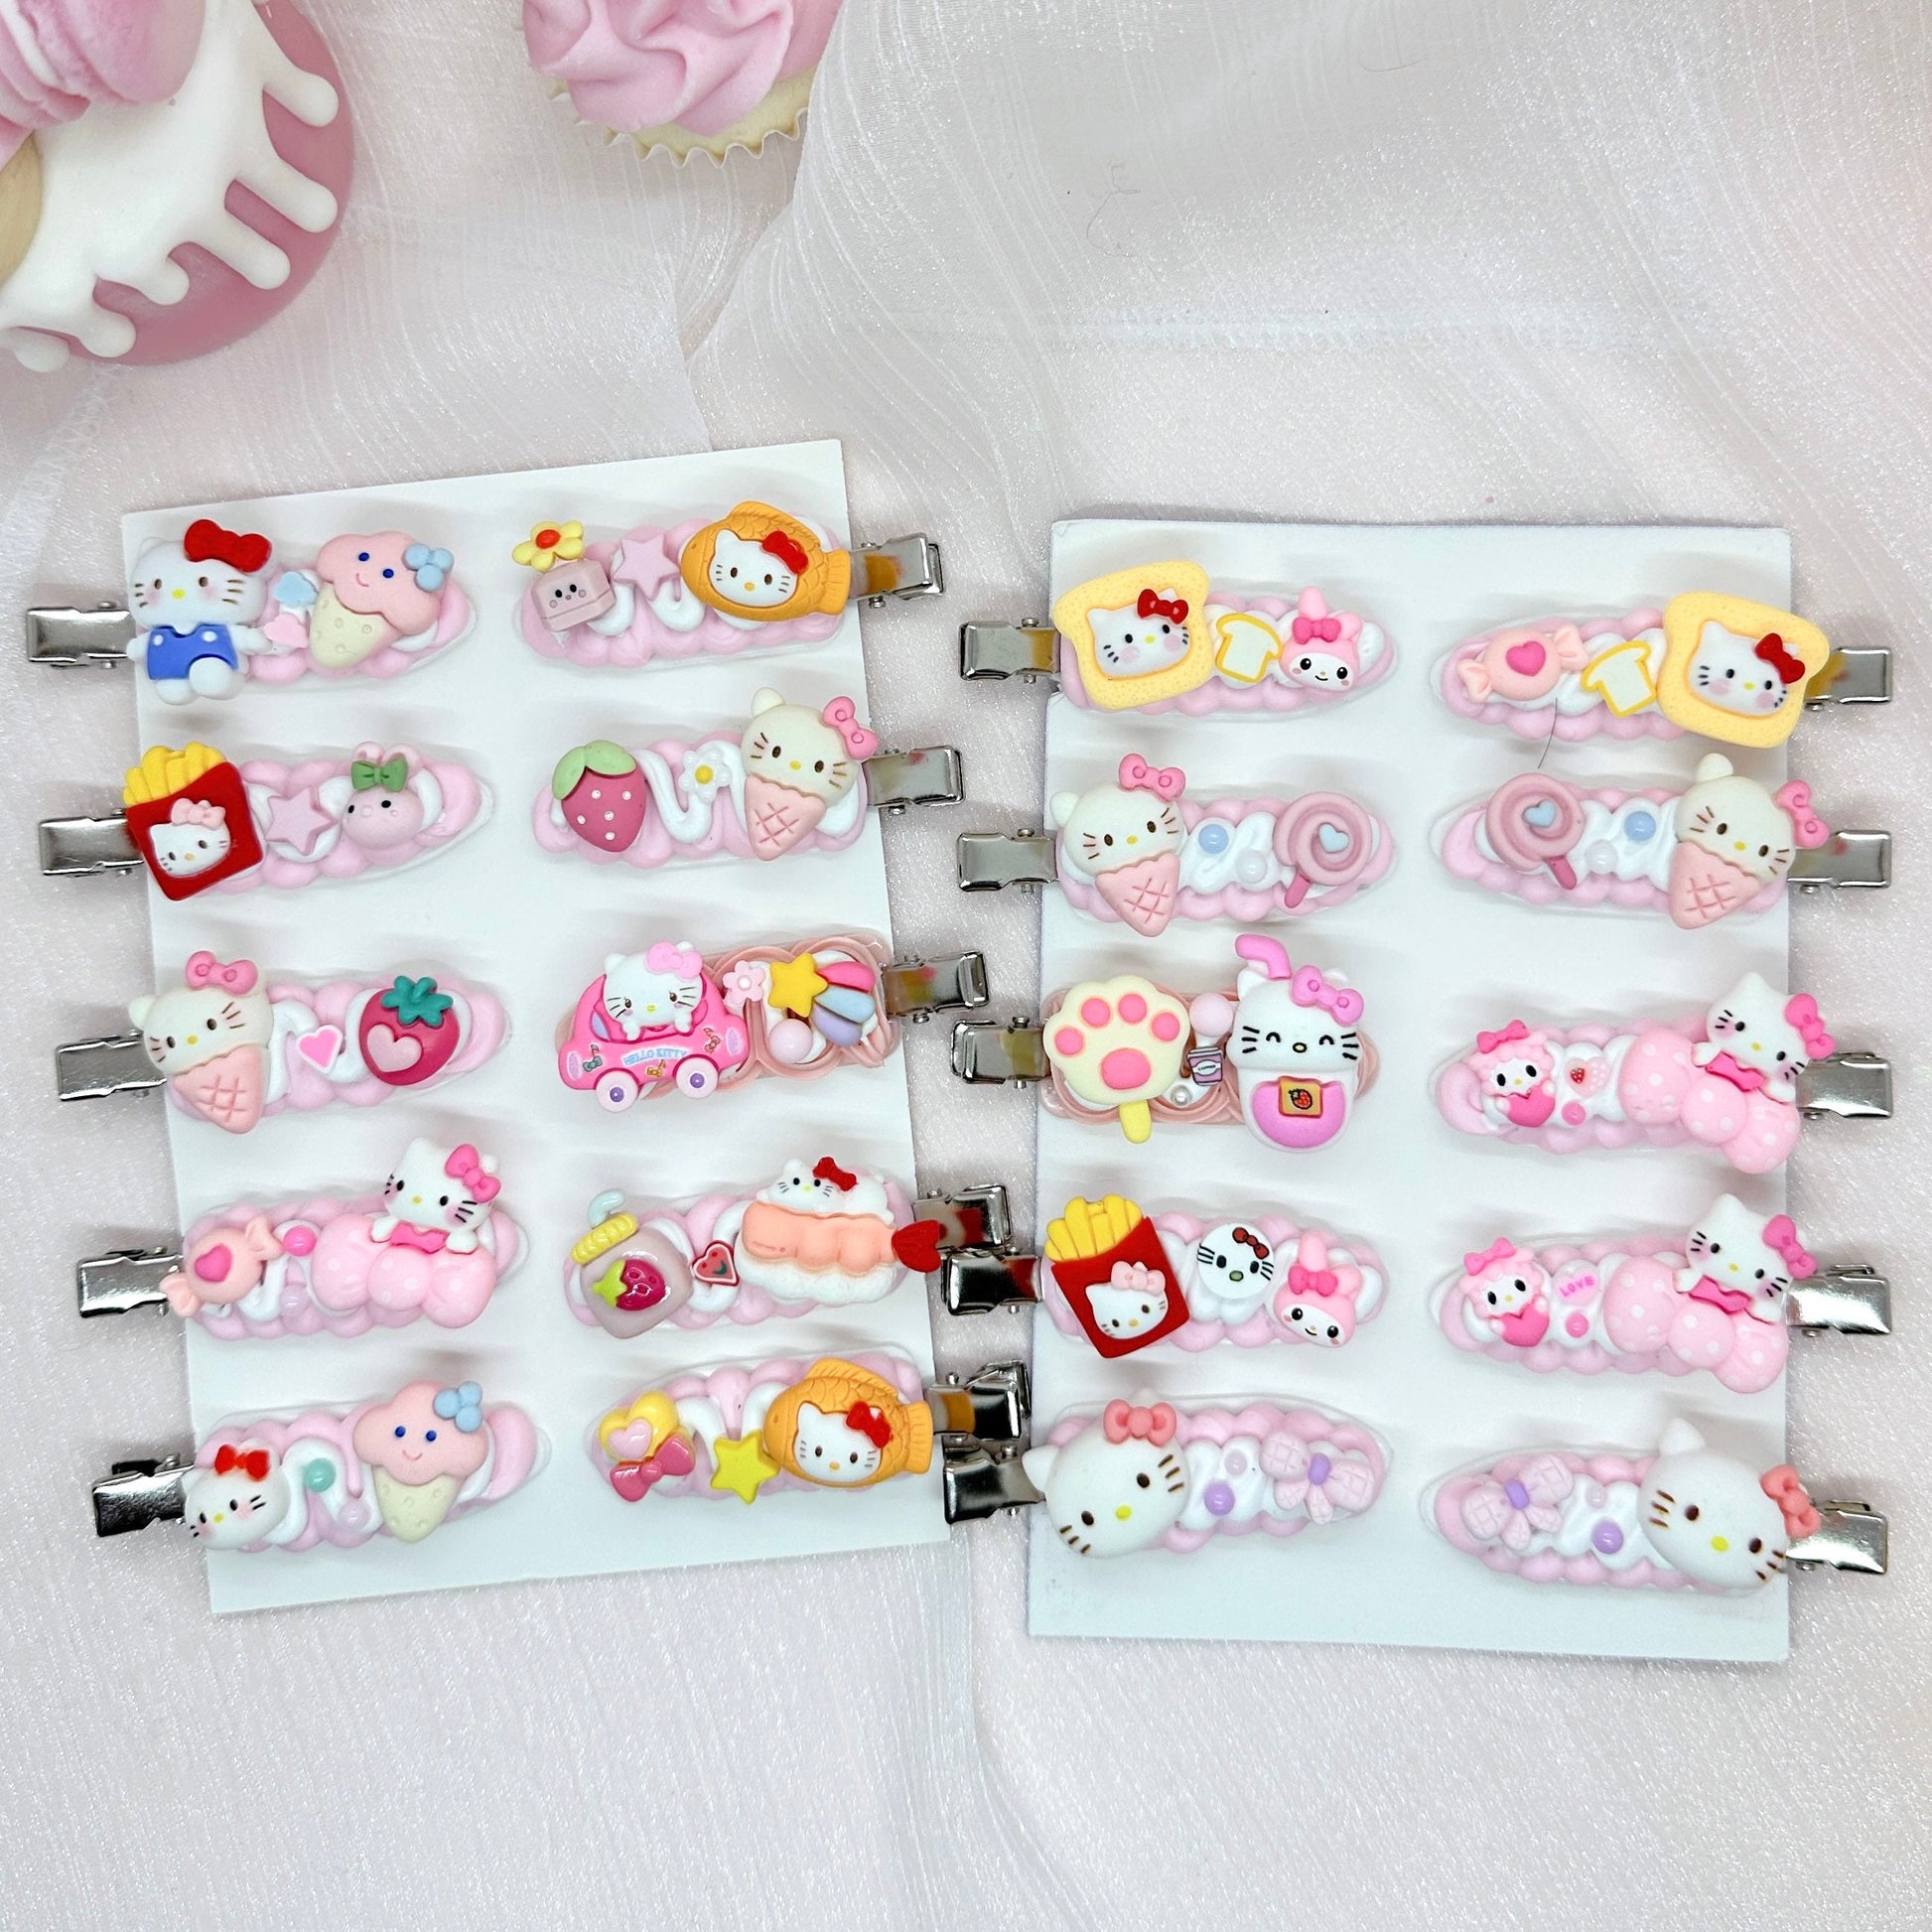 Kawaii Hello Kitty hair clips, Handmade Pink Kitty Barrette, Random 1, cute decoden hair accessories, each one is unique